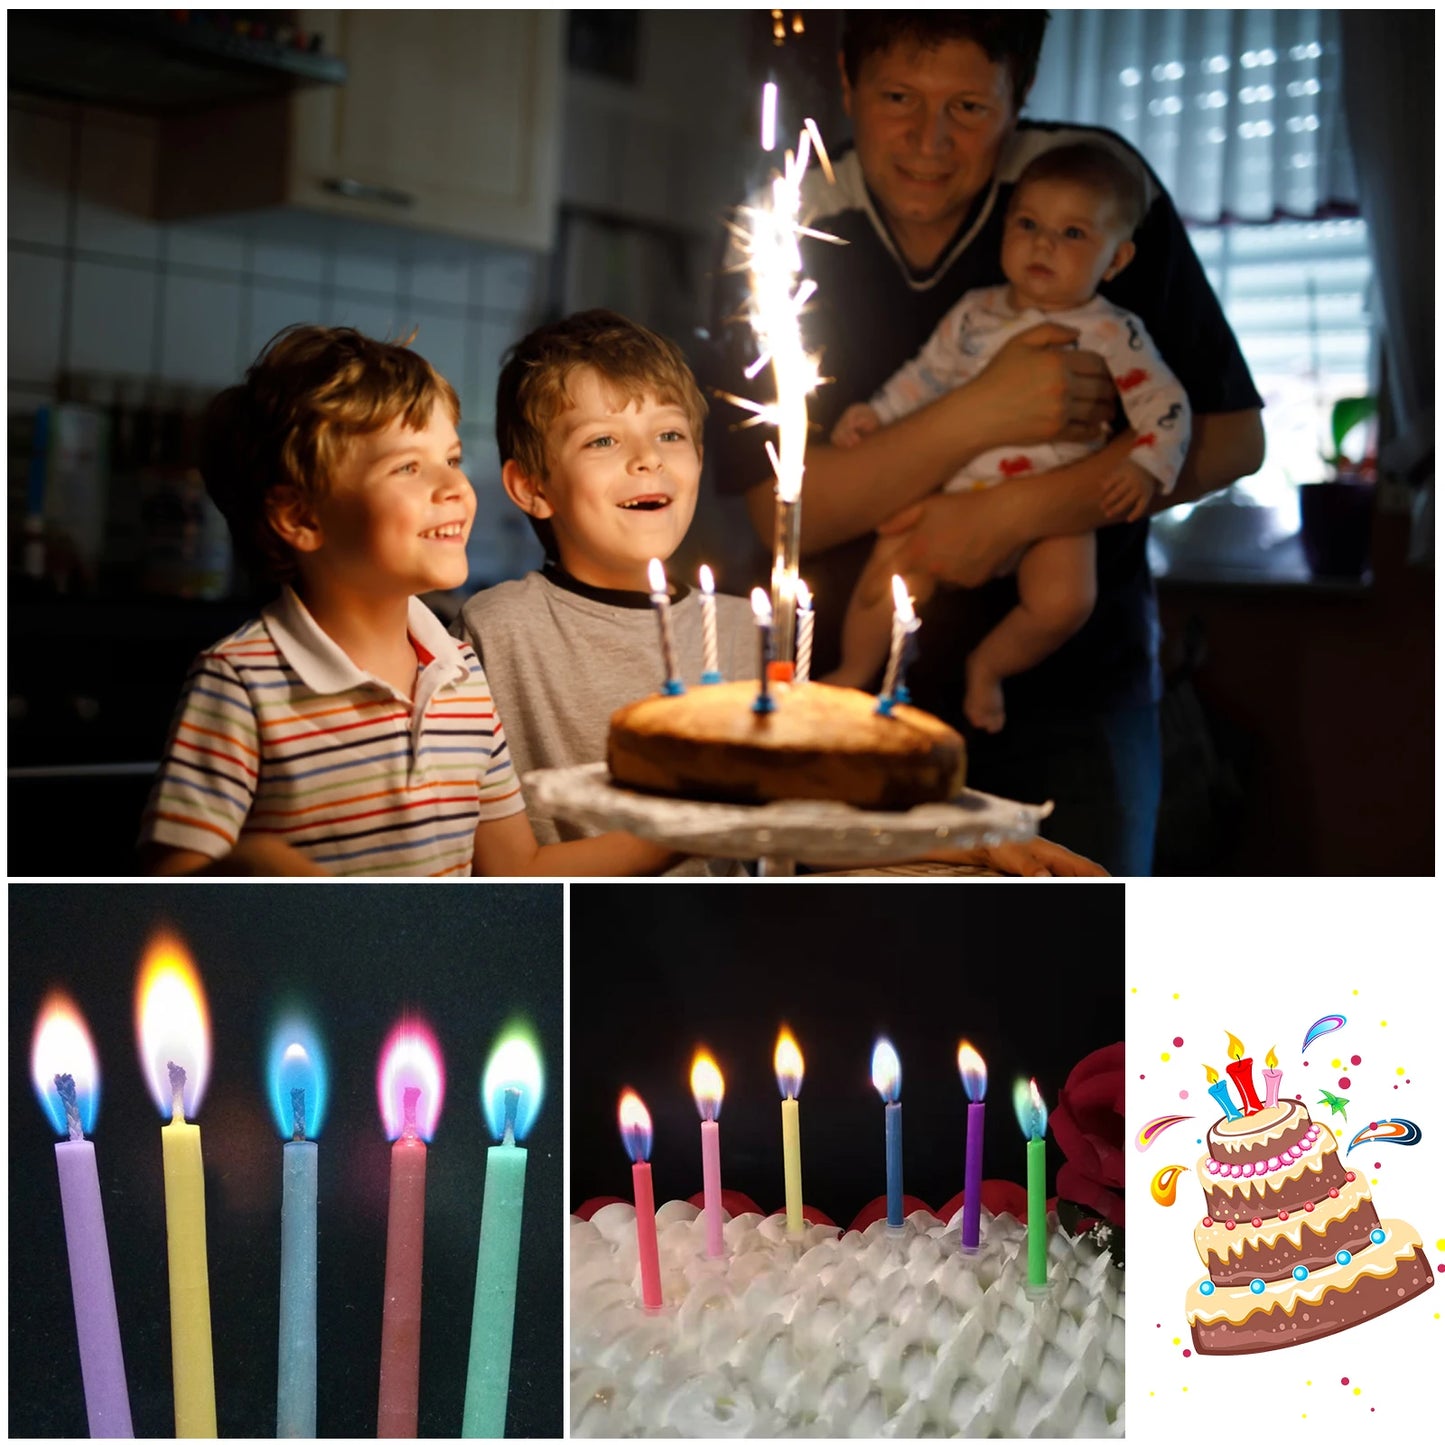 נרות להבה רב -צבעונית צבעונית לחתונה עוגת יום הולדת עוגת עוגות עוגות ציוד למסיבות מסיבות לילדים ילדים